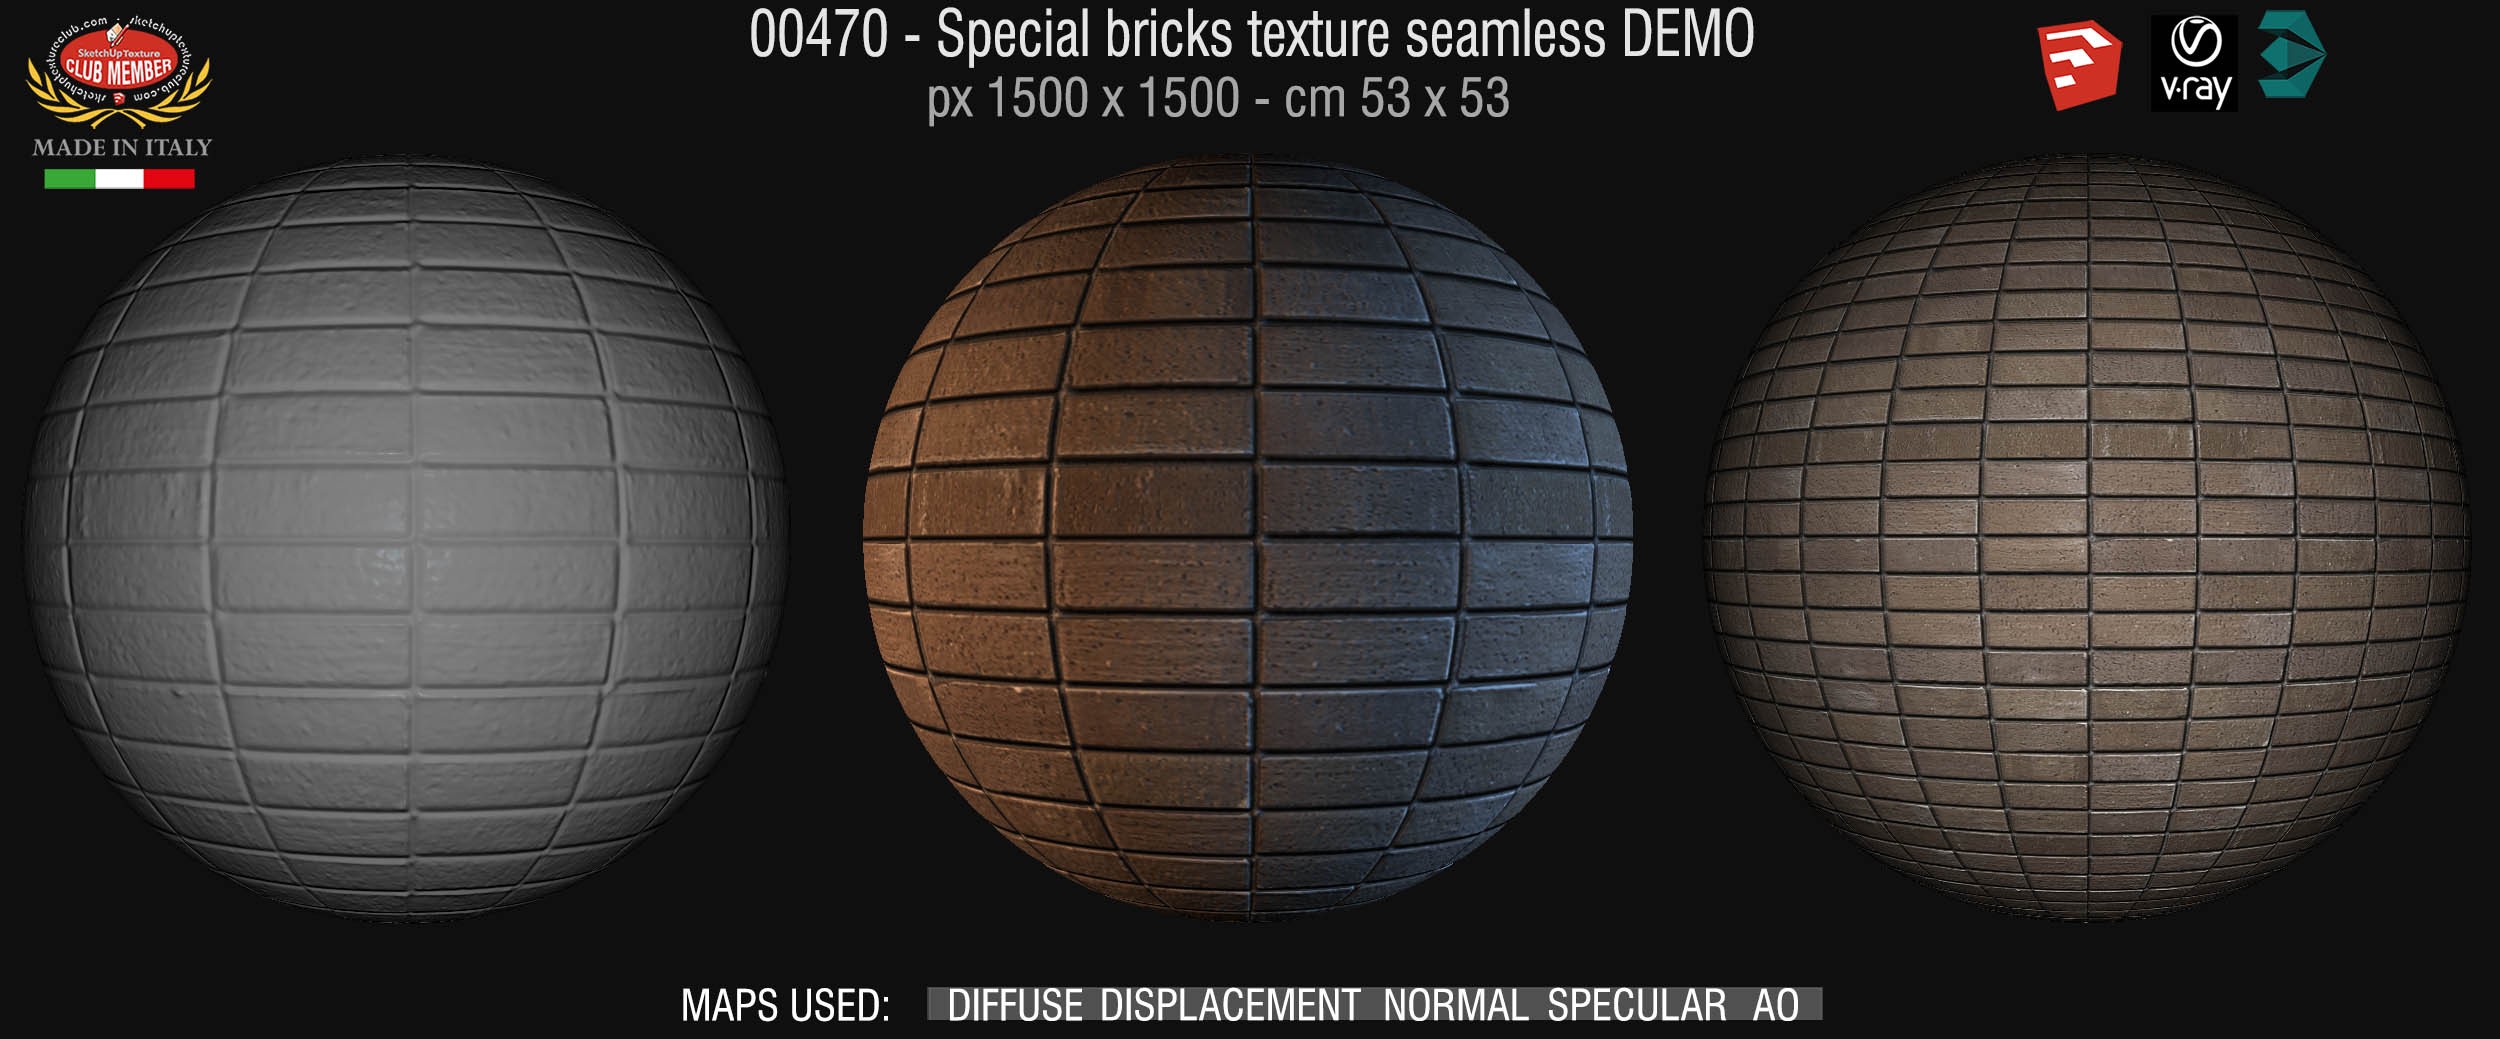 00470 Special bricks texture seamless + maps DEMO